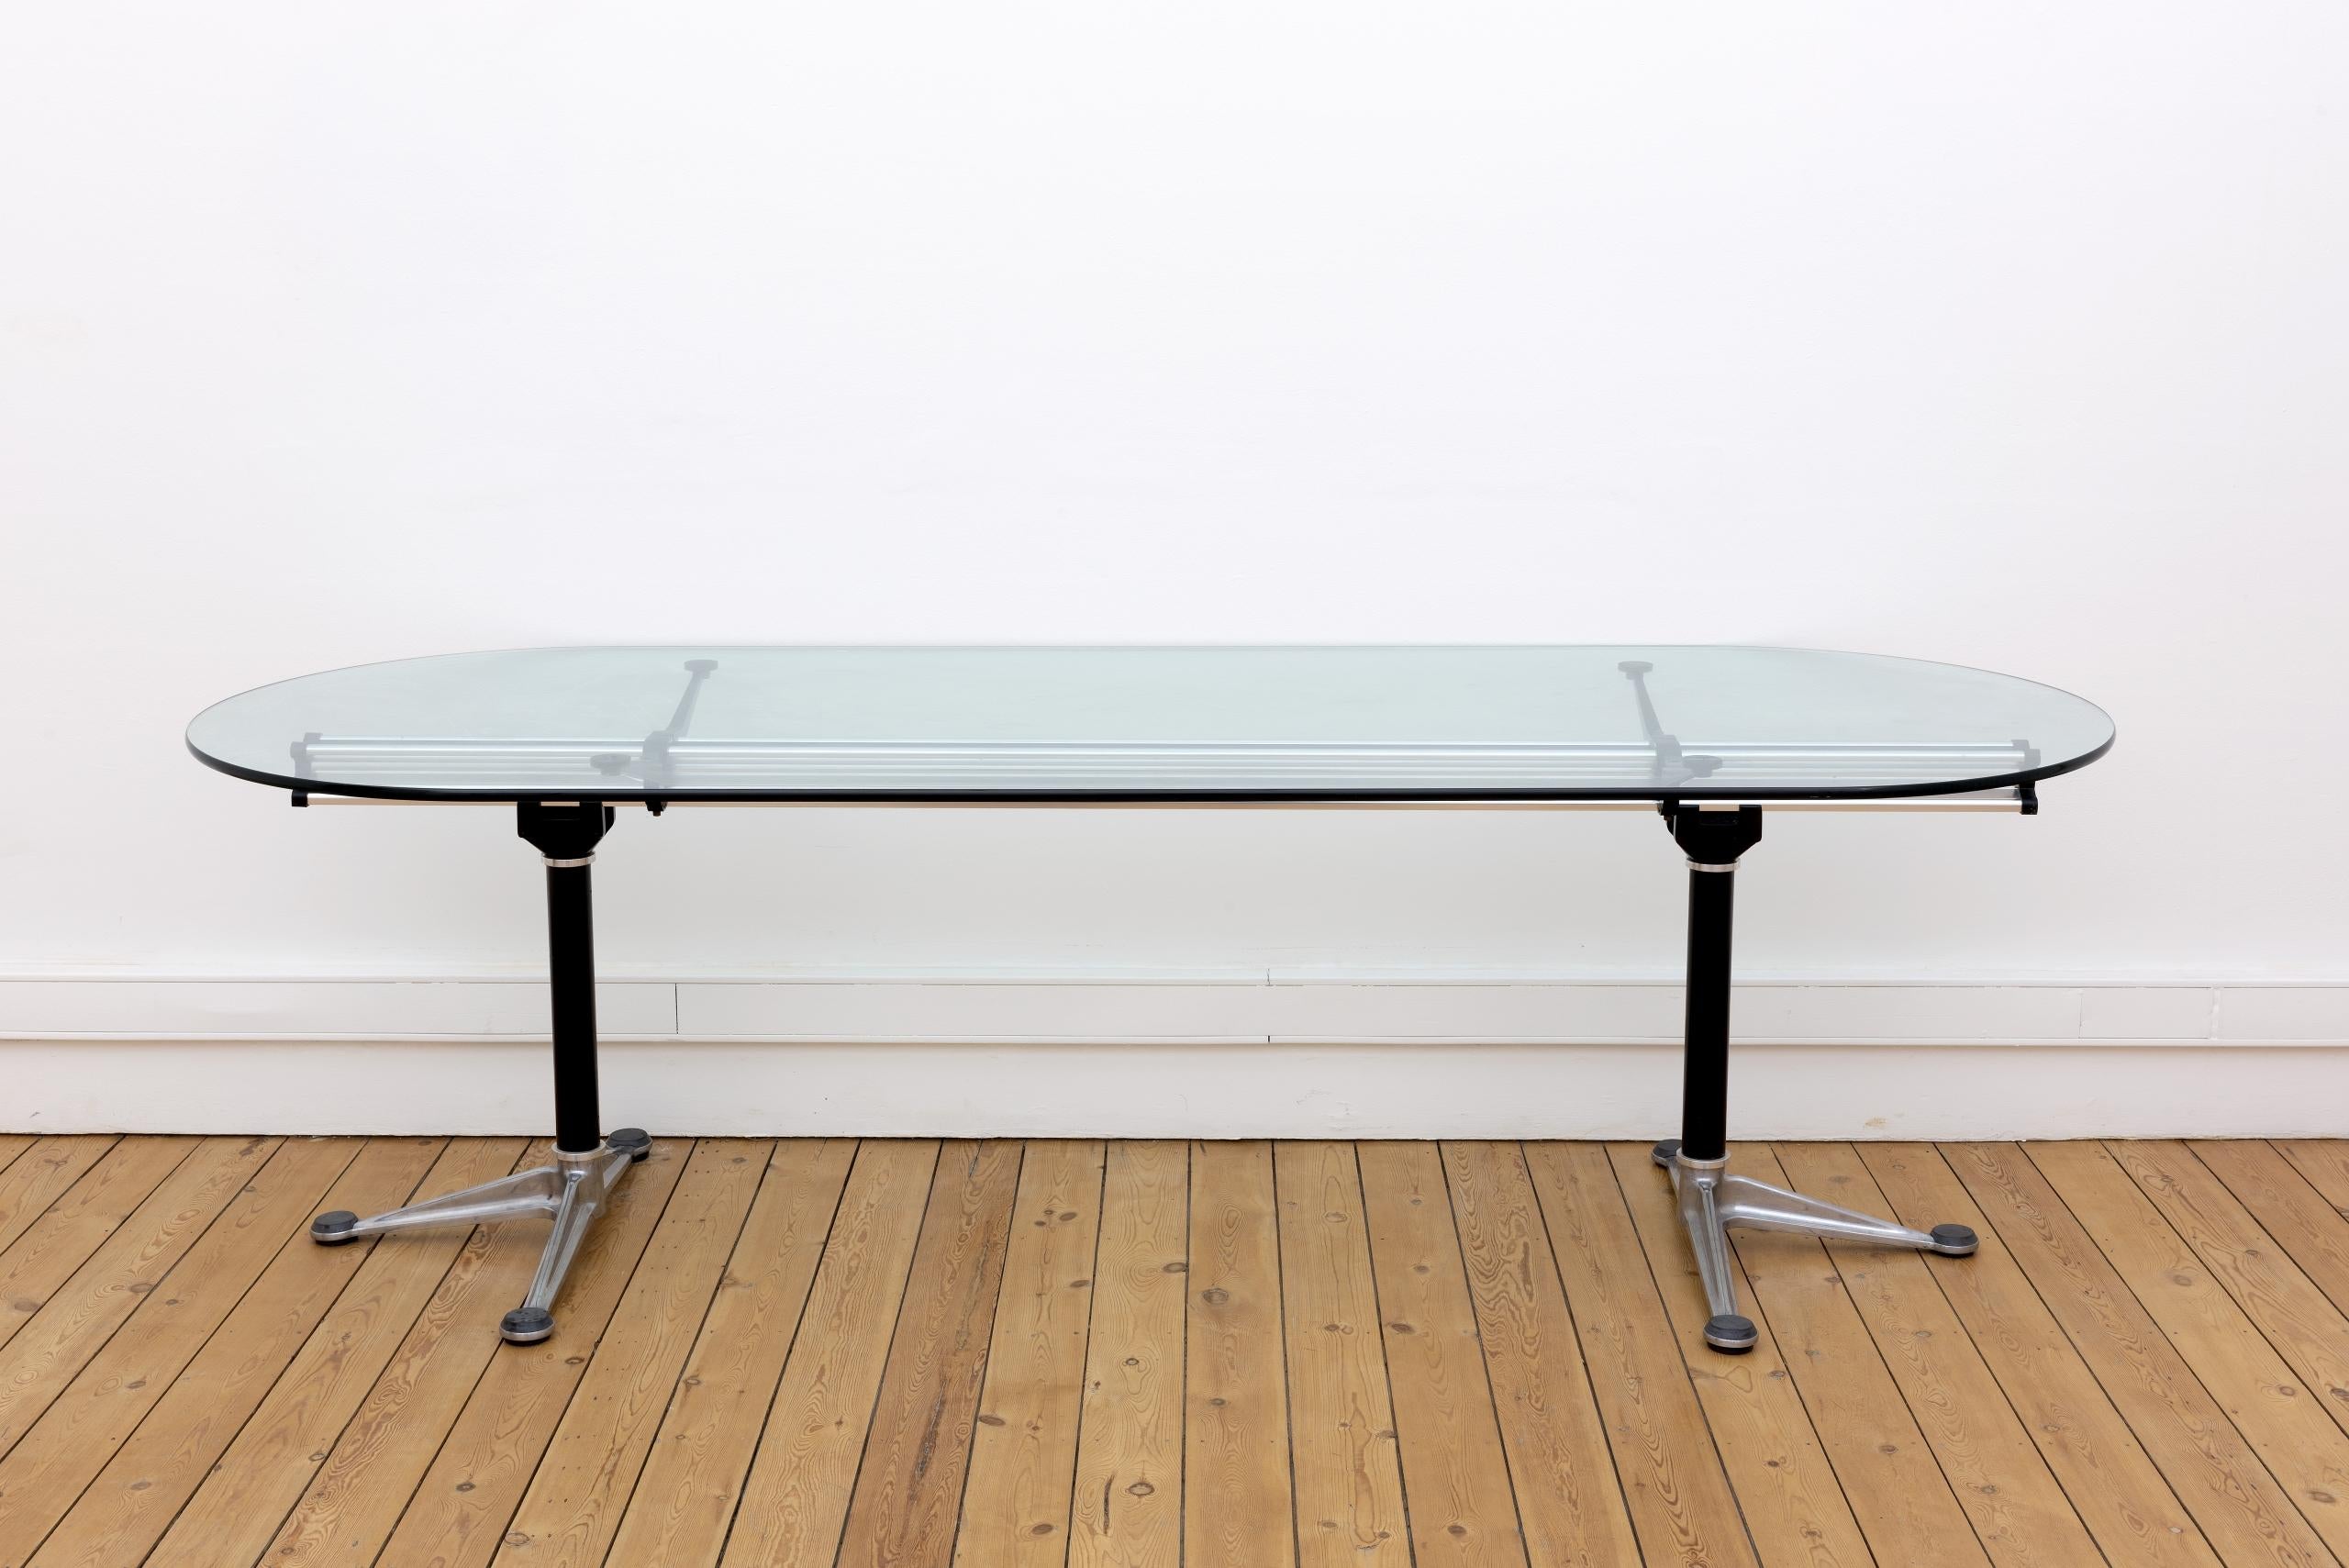 Une poutre centrale unique en aluminium confère à cette table conçue par Bruce Burdick un profil saisissant.

Les “tables Burdick” sont considérées comme des “classiques contemporains”.

L’épaisseur des plateaux en verre à bord arrondi est de